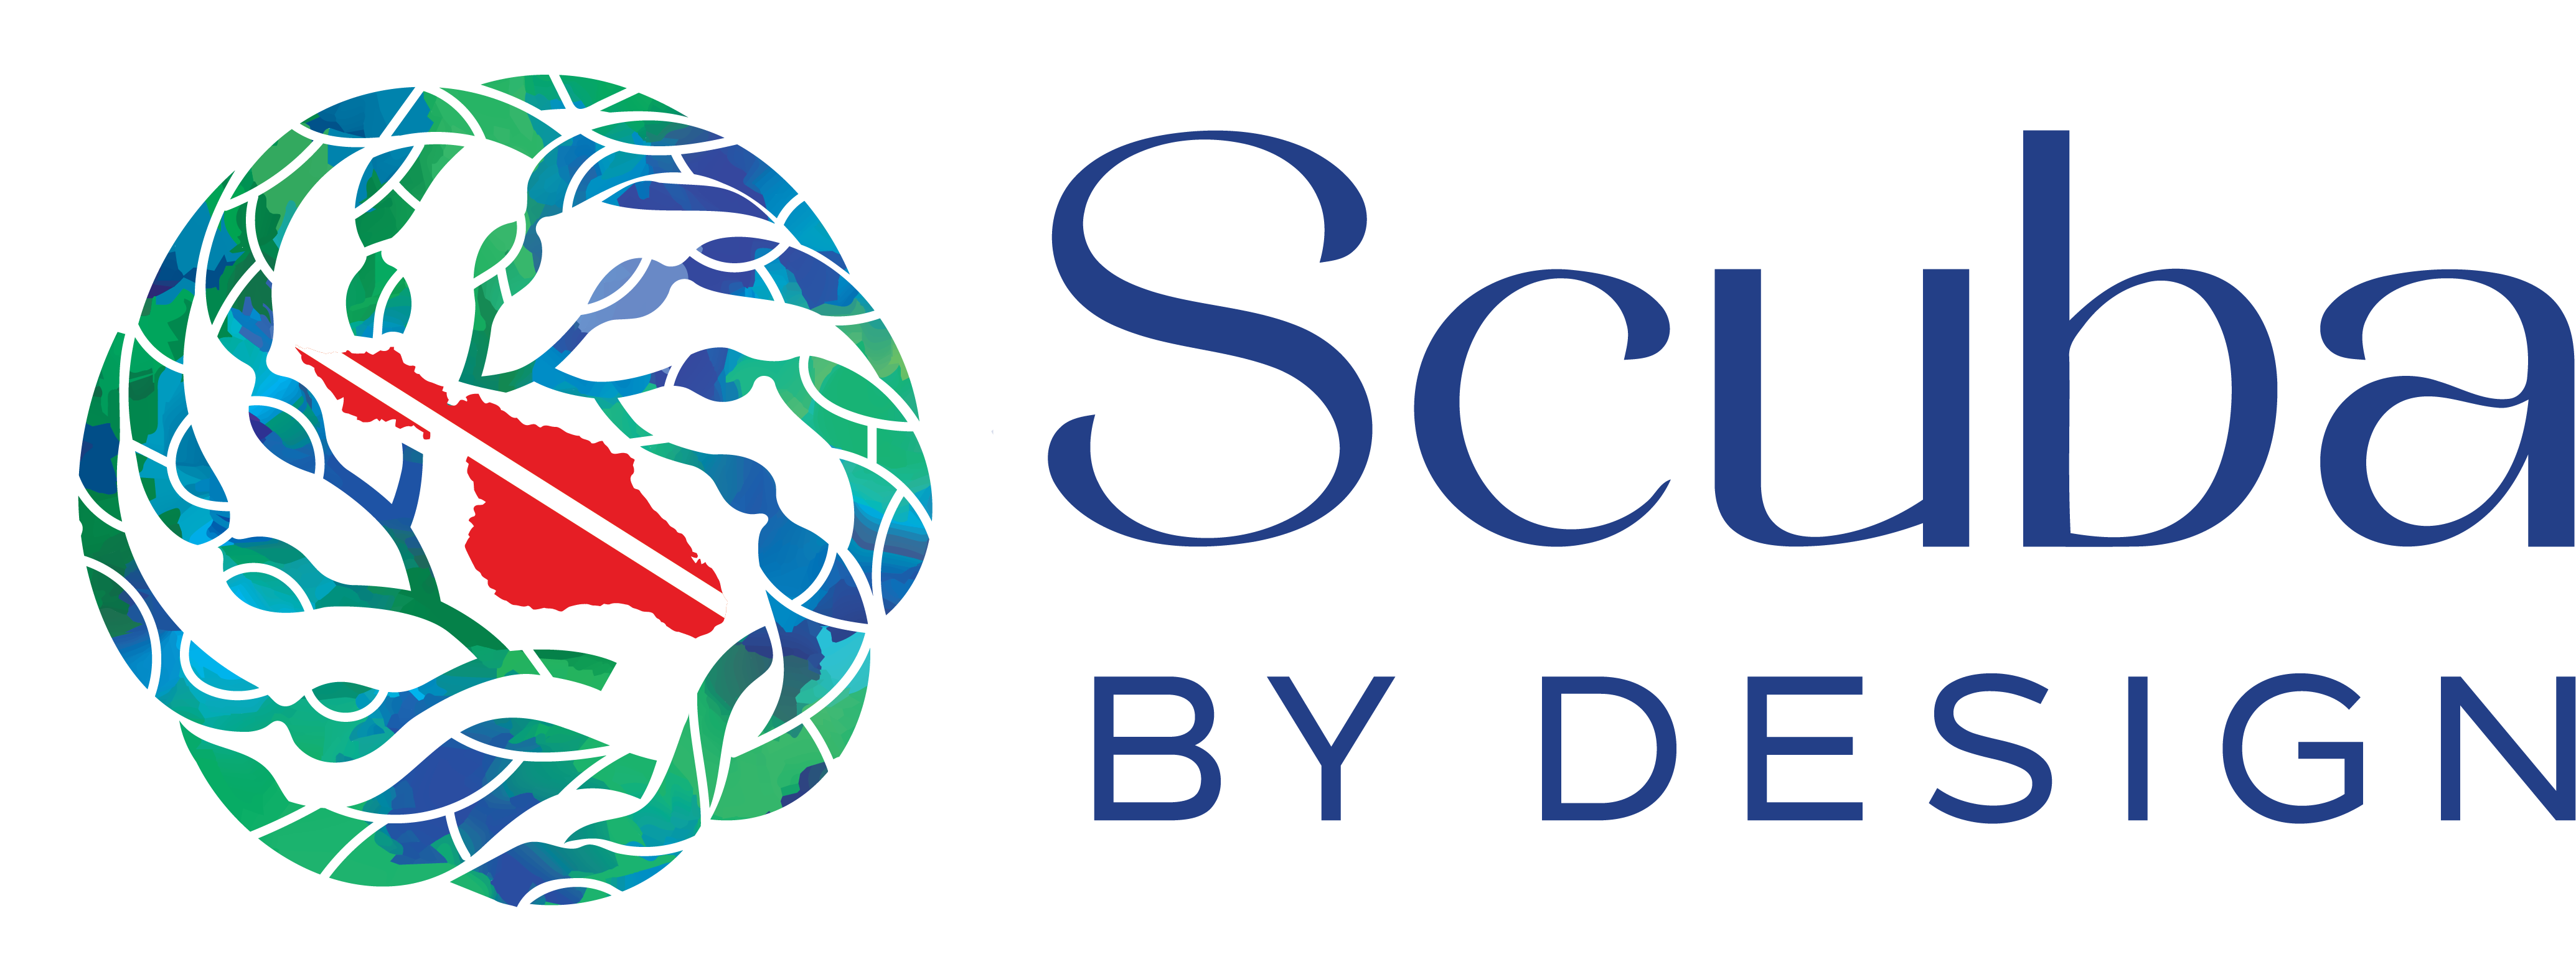 Scuba by Design Logo